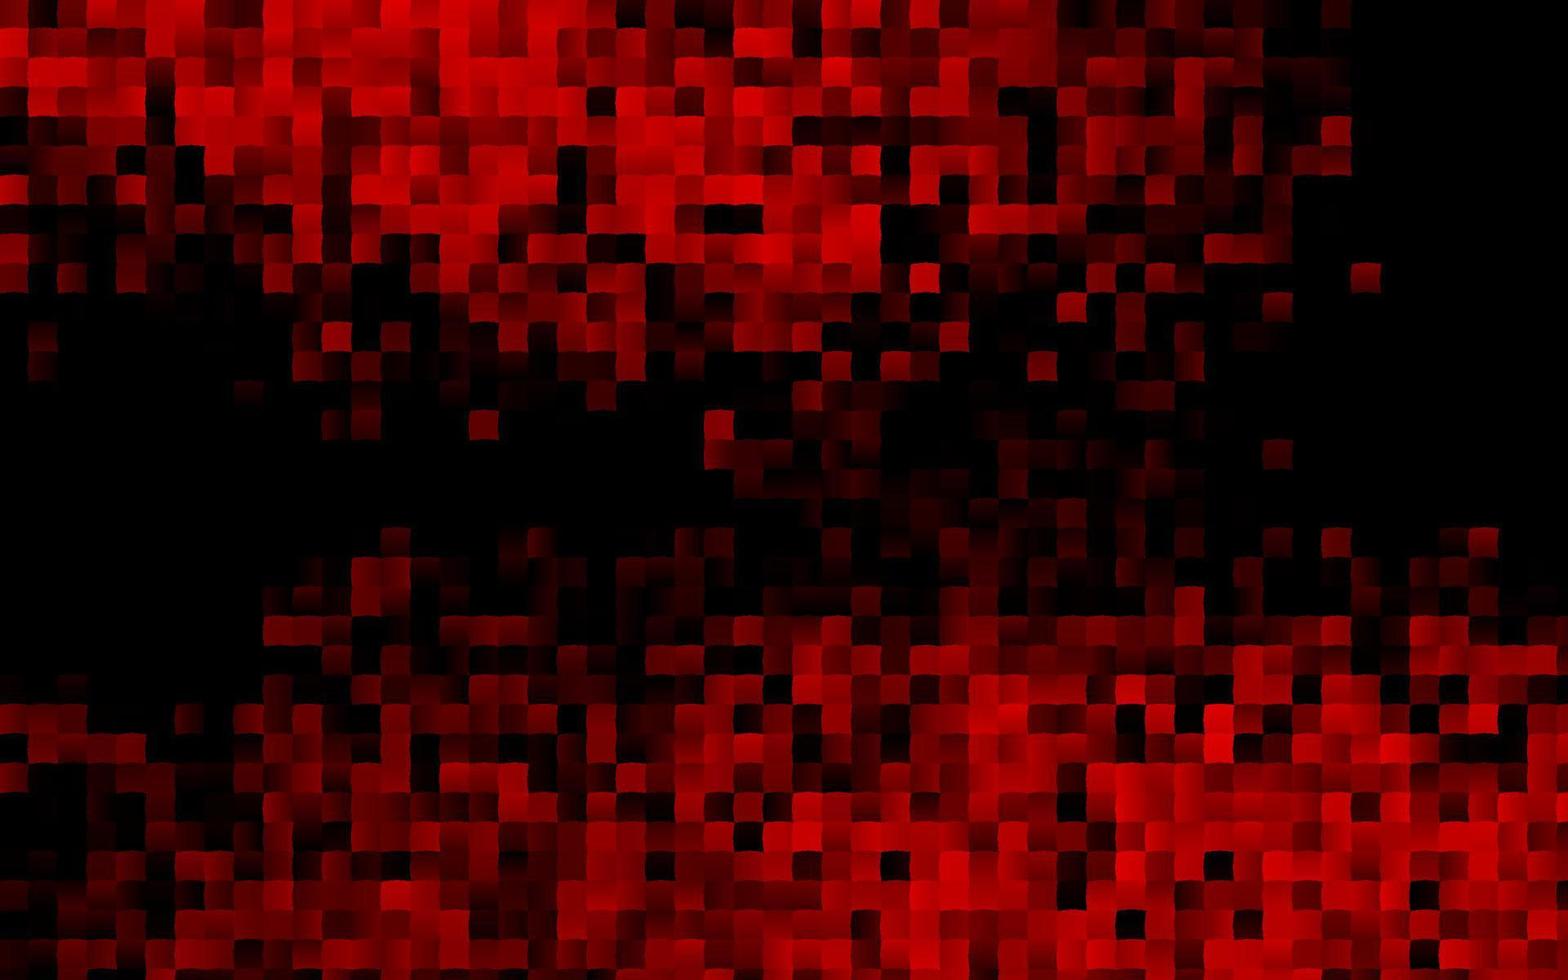 modelo de vetor vermelho escuro com cristais, retângulos.